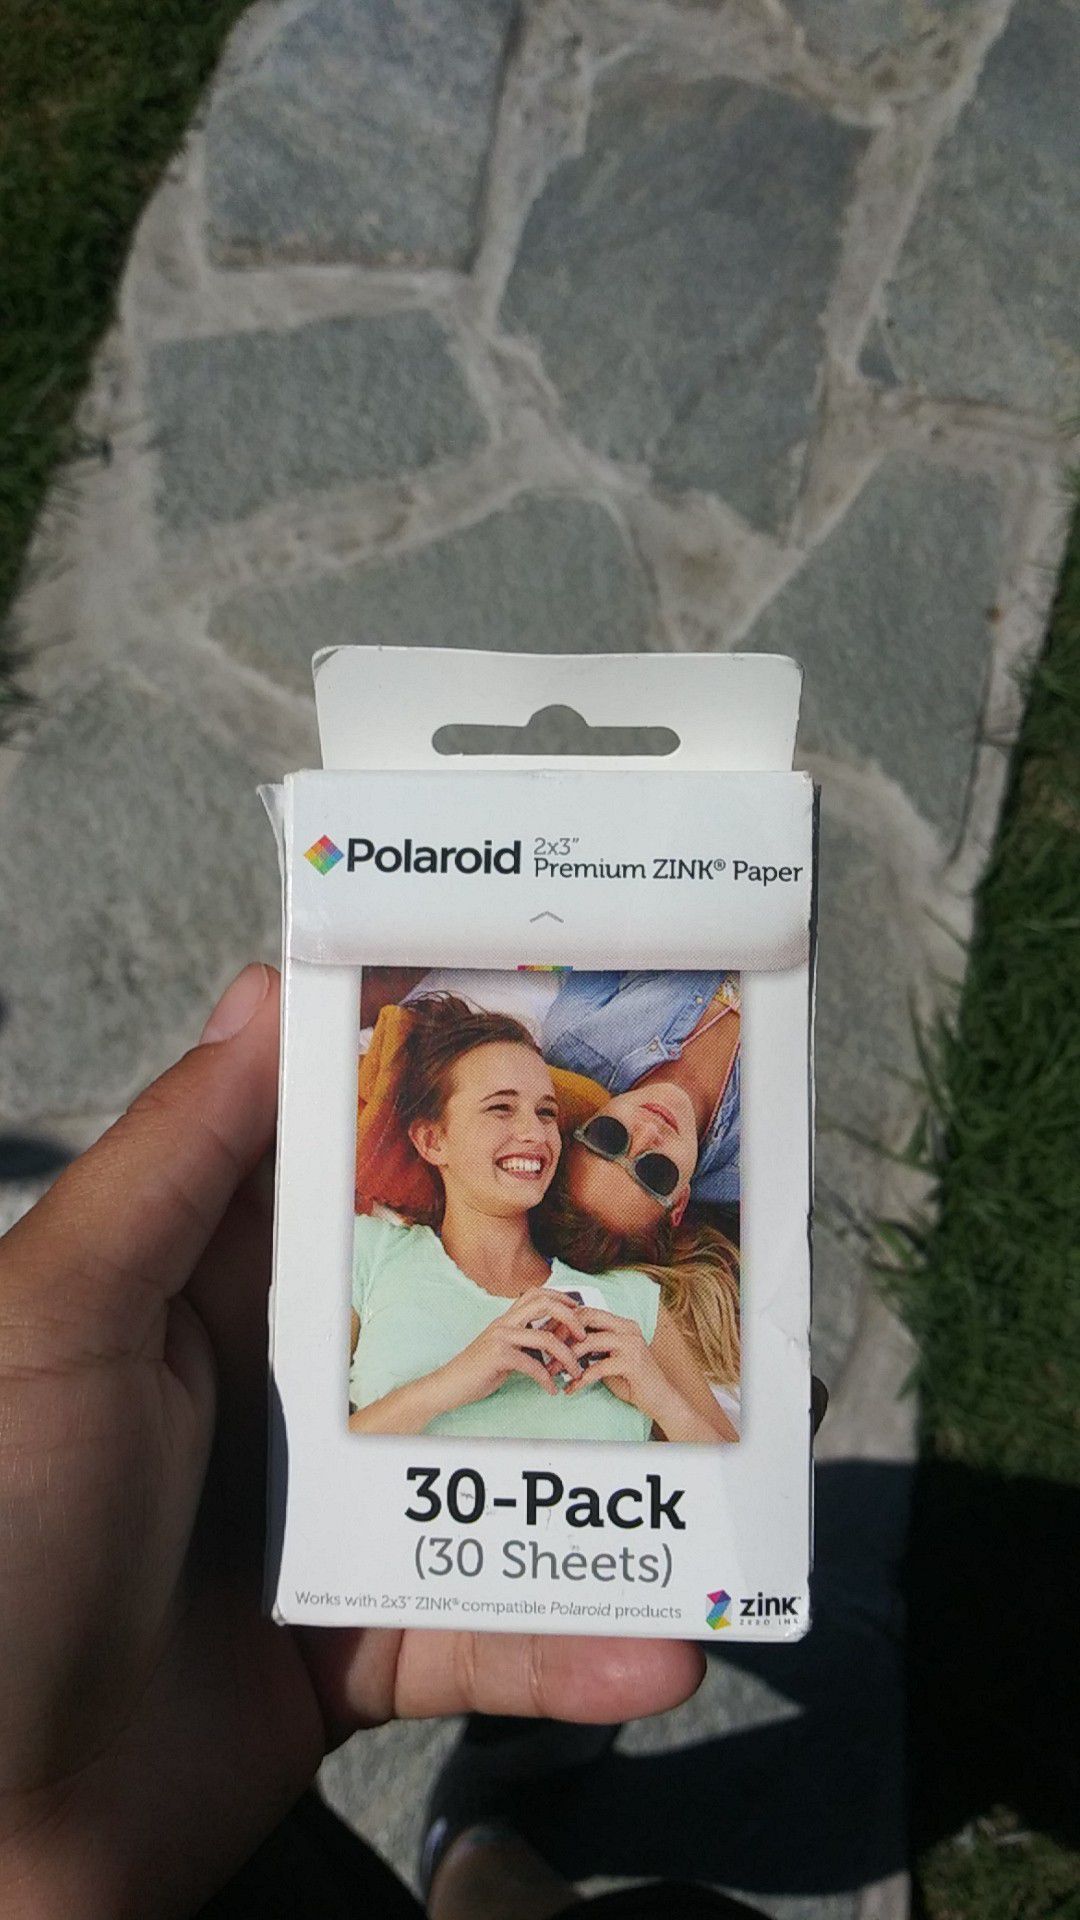 Polaroid film